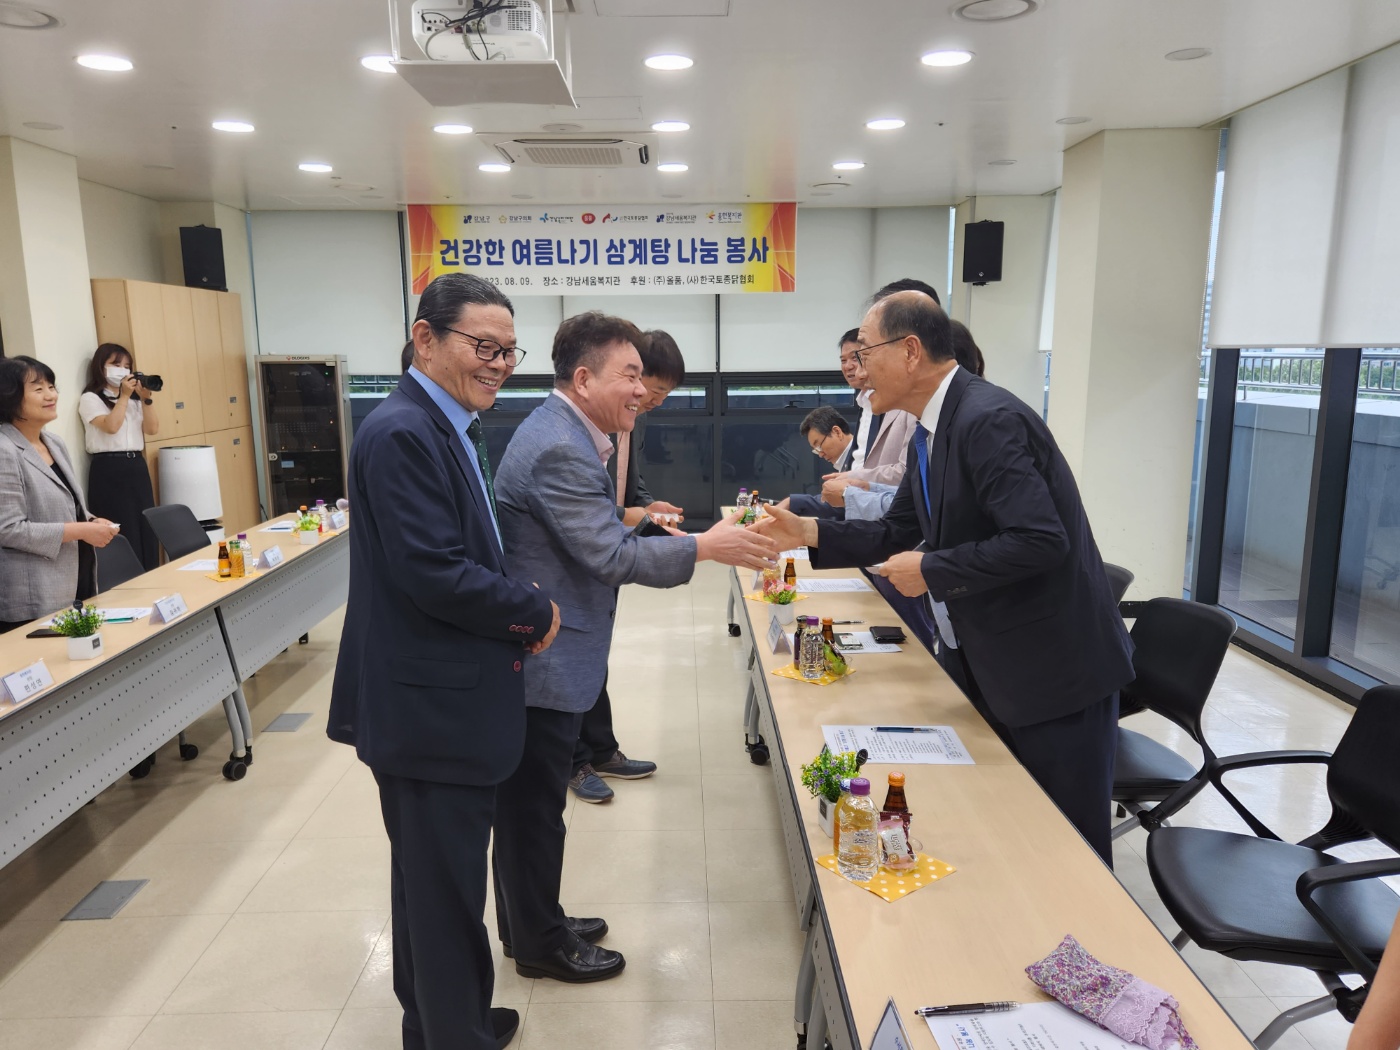 20230809  (주)올품 및 (사)한국토종닭협회와 함께하는 건강한 여름나기 삼계탕 나눔 봉사 